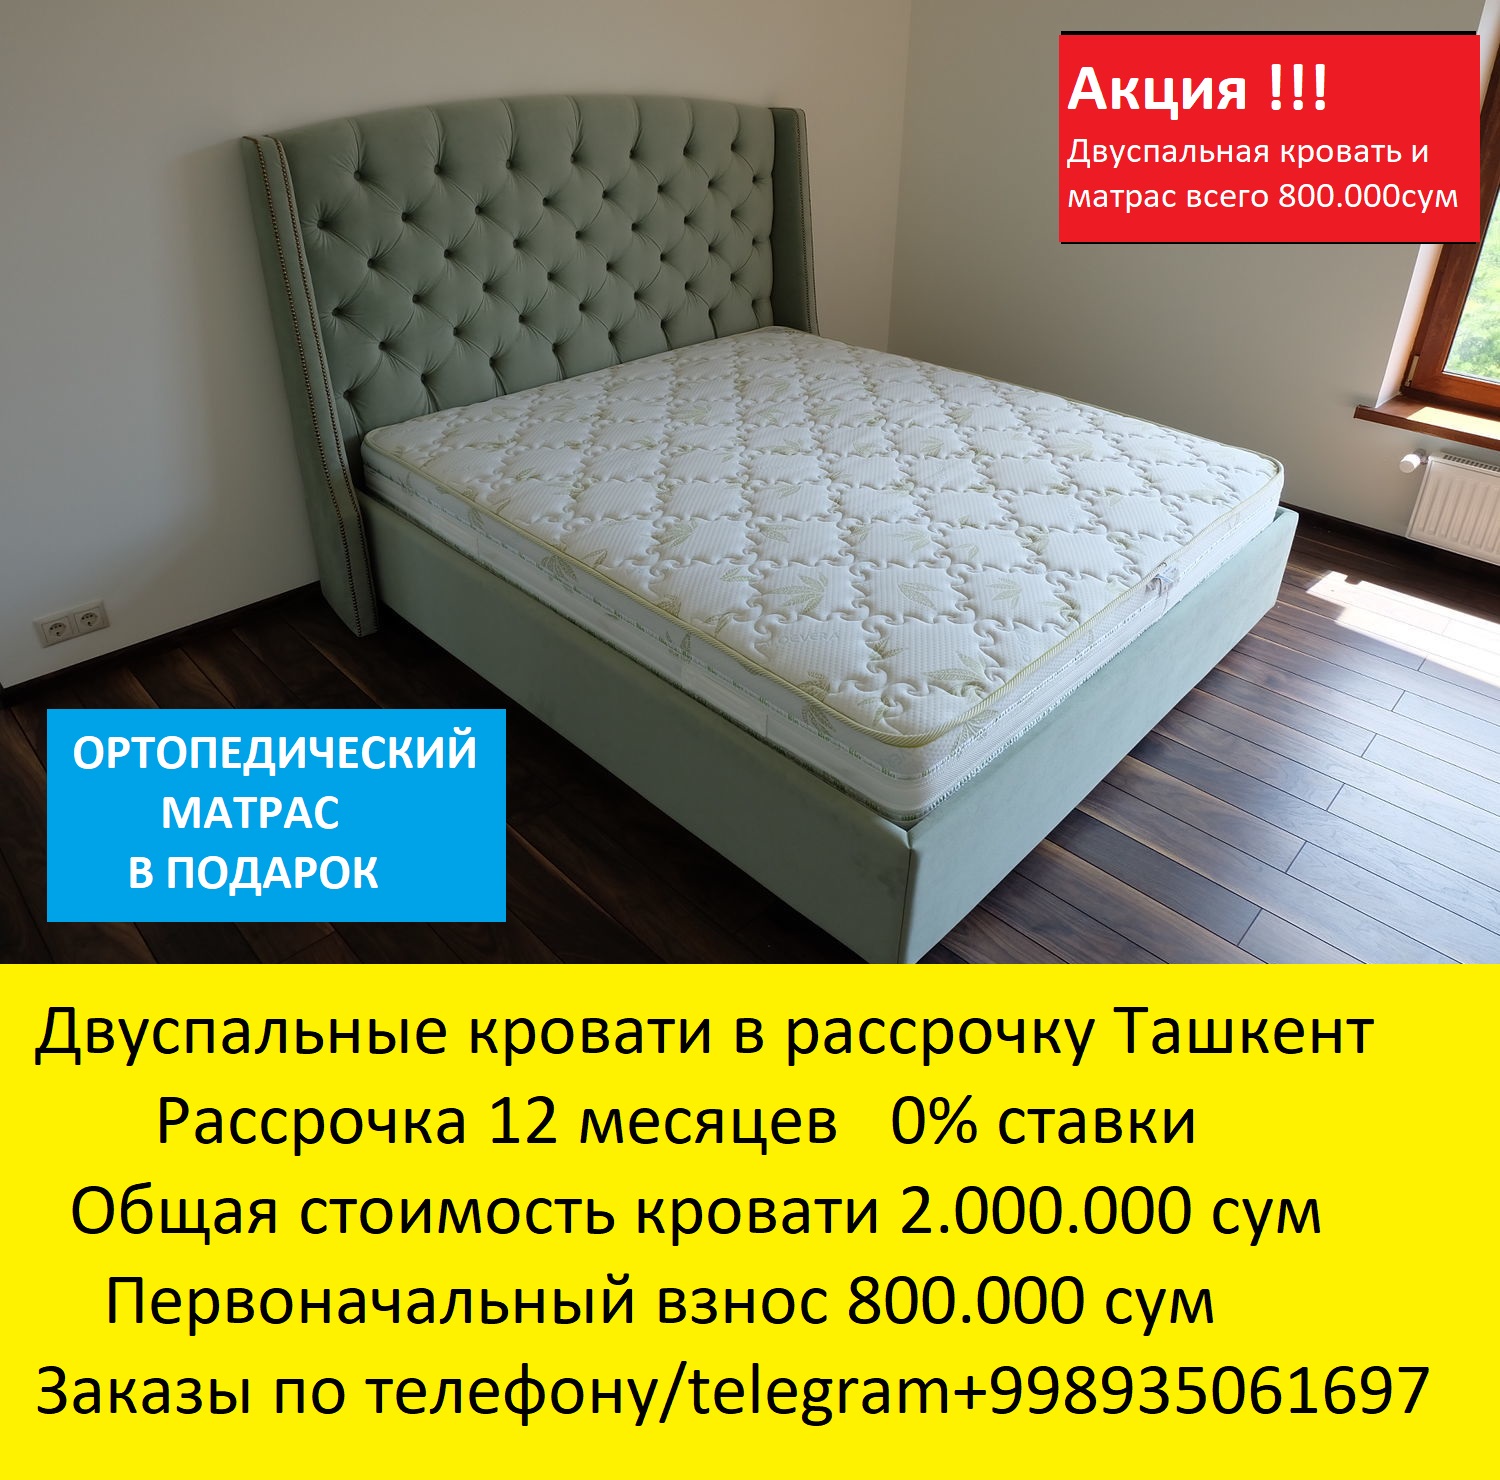 Кровати двуспальные в Ташкенте! Акция всего  - фотография